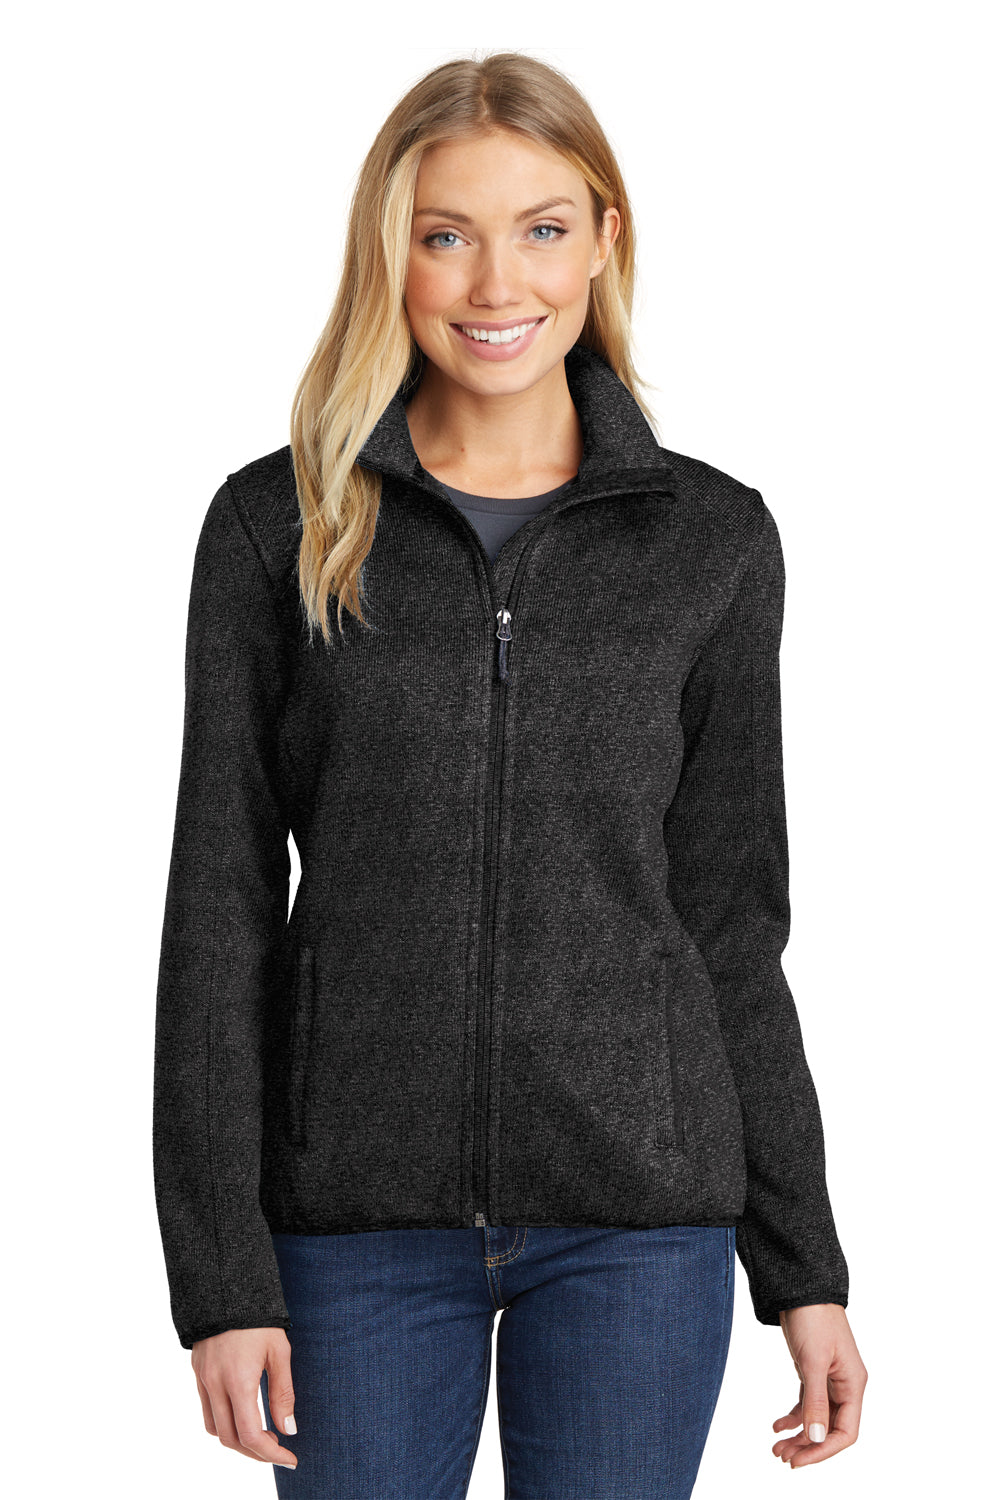 Port Authority L232 Womens Full Zip Sweater Fleece Jacket Heather Black Front